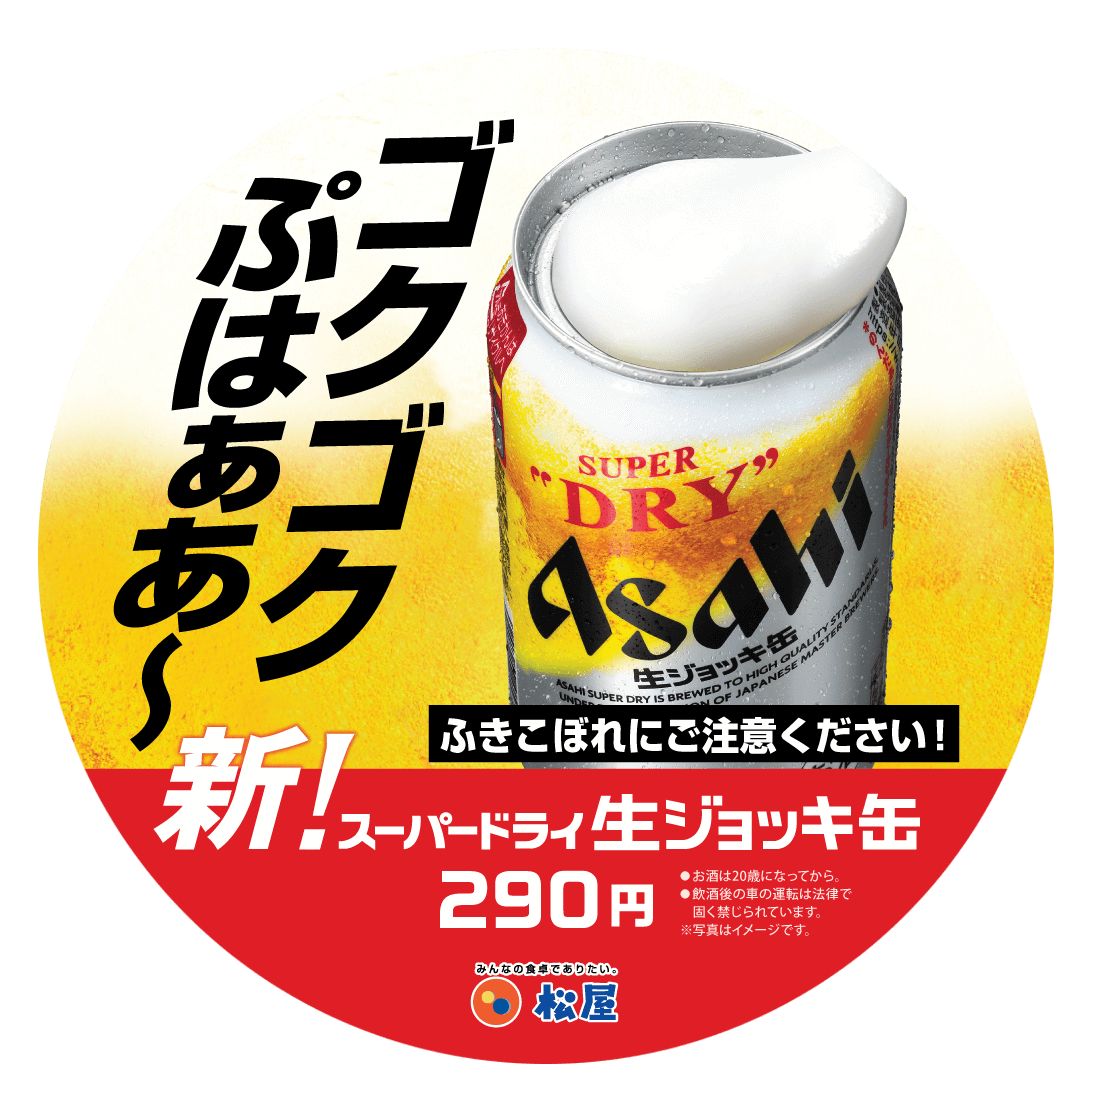 松屋の『アサヒ スーパードライ生ジョッキ缶』